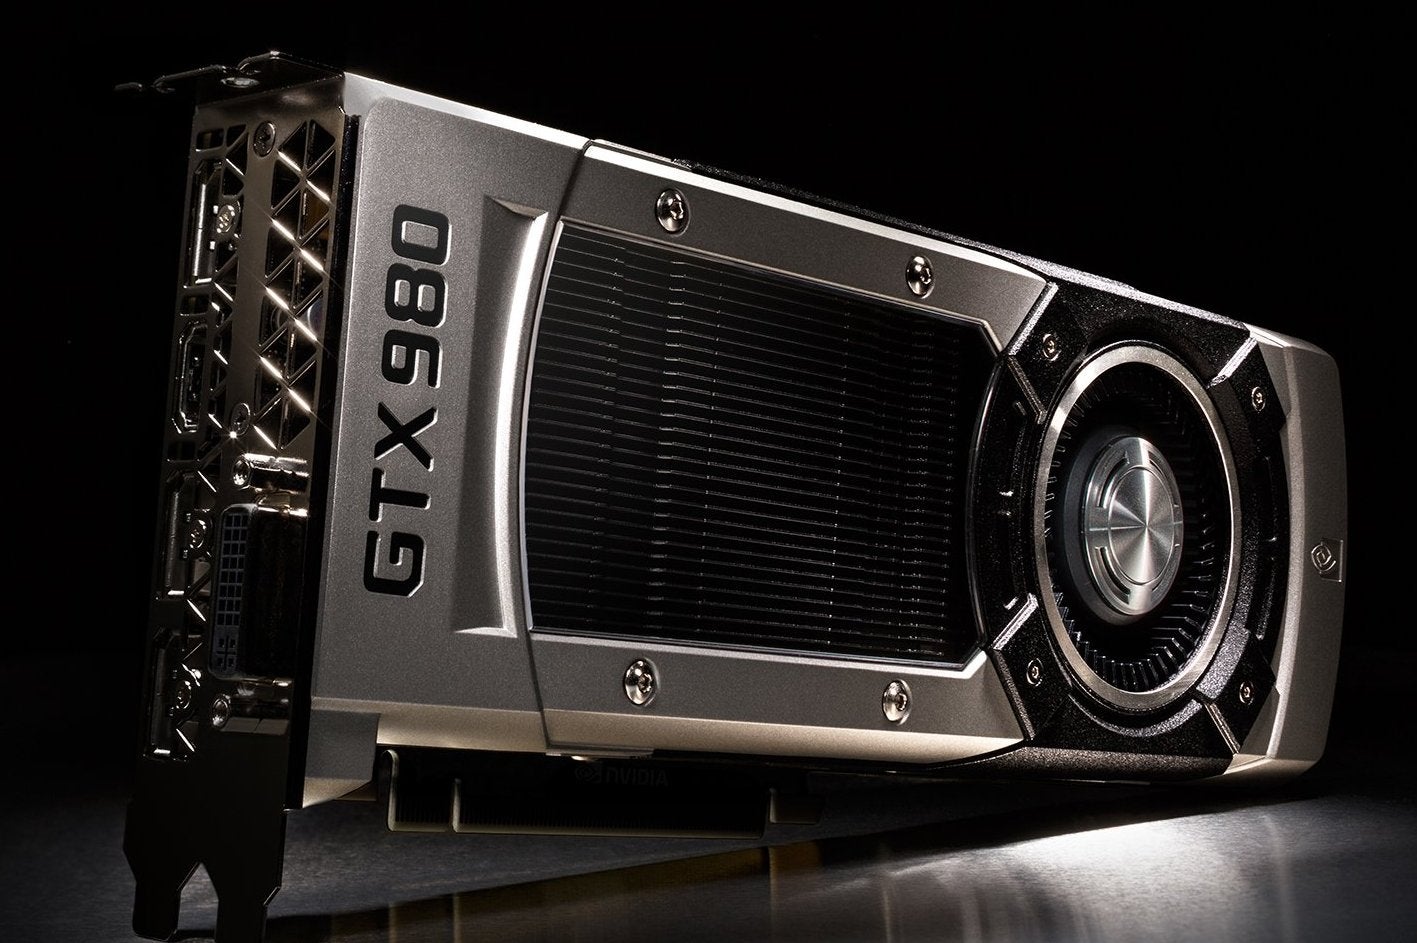 Immagine di Nvidia lancia ufficialmente le GeForce GTX 970 e GTX 980